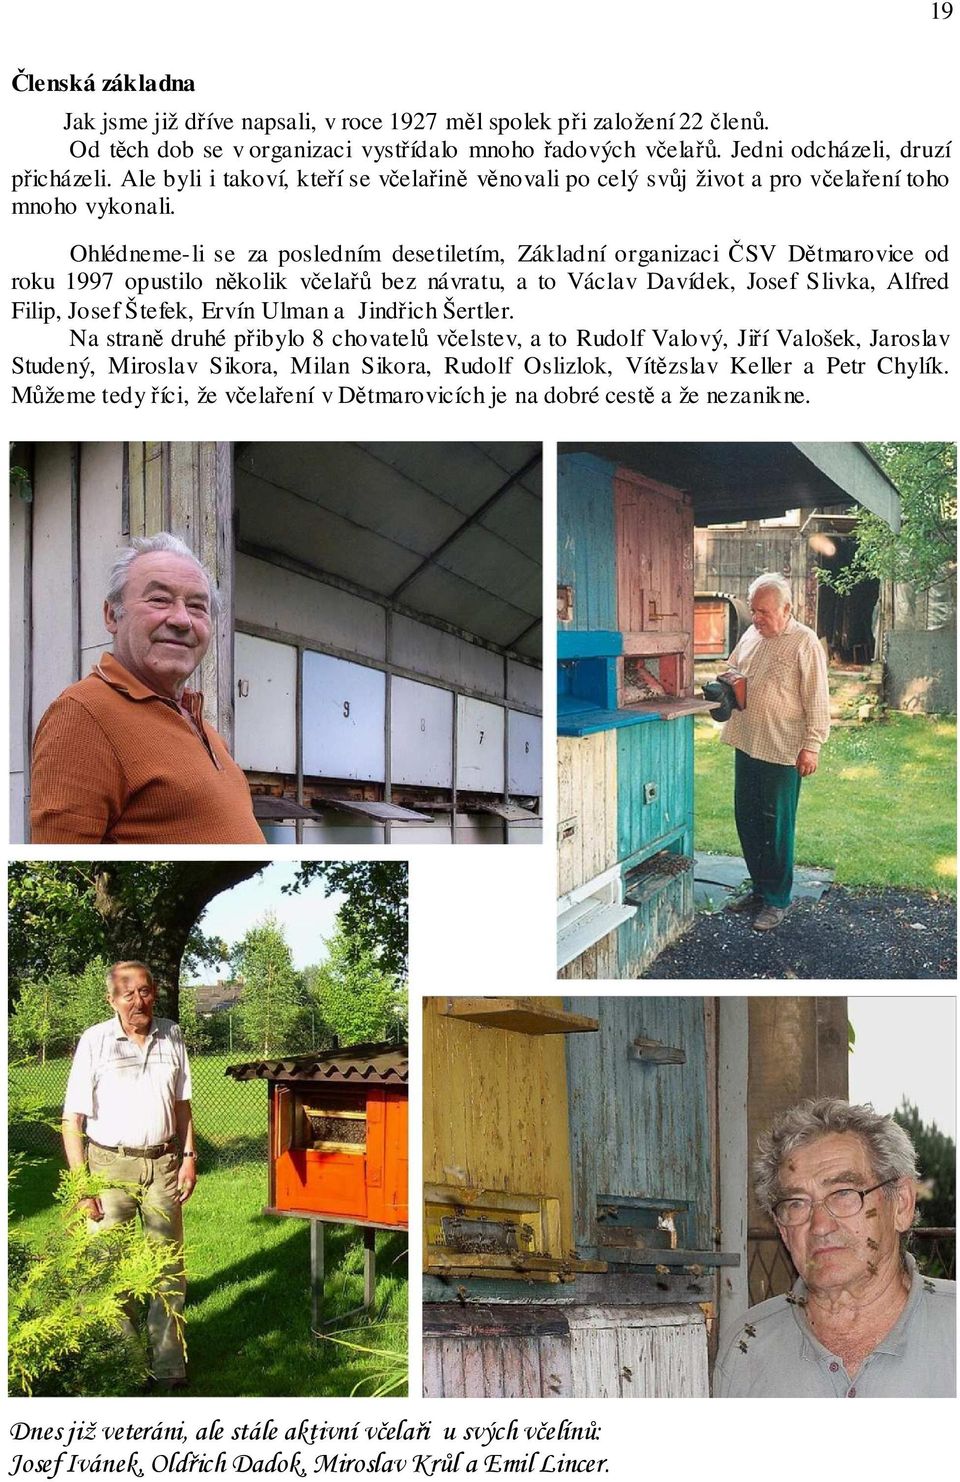 Ohlédneme-li se za posledním desetiletím, Základní organizaci ČSV Dětmarovice od roku 1997 opustilo několik včelařů bez návratu, a to Václav Davídek, Josef Slivka, Alfred Filip, Josef Štefek, Ervín